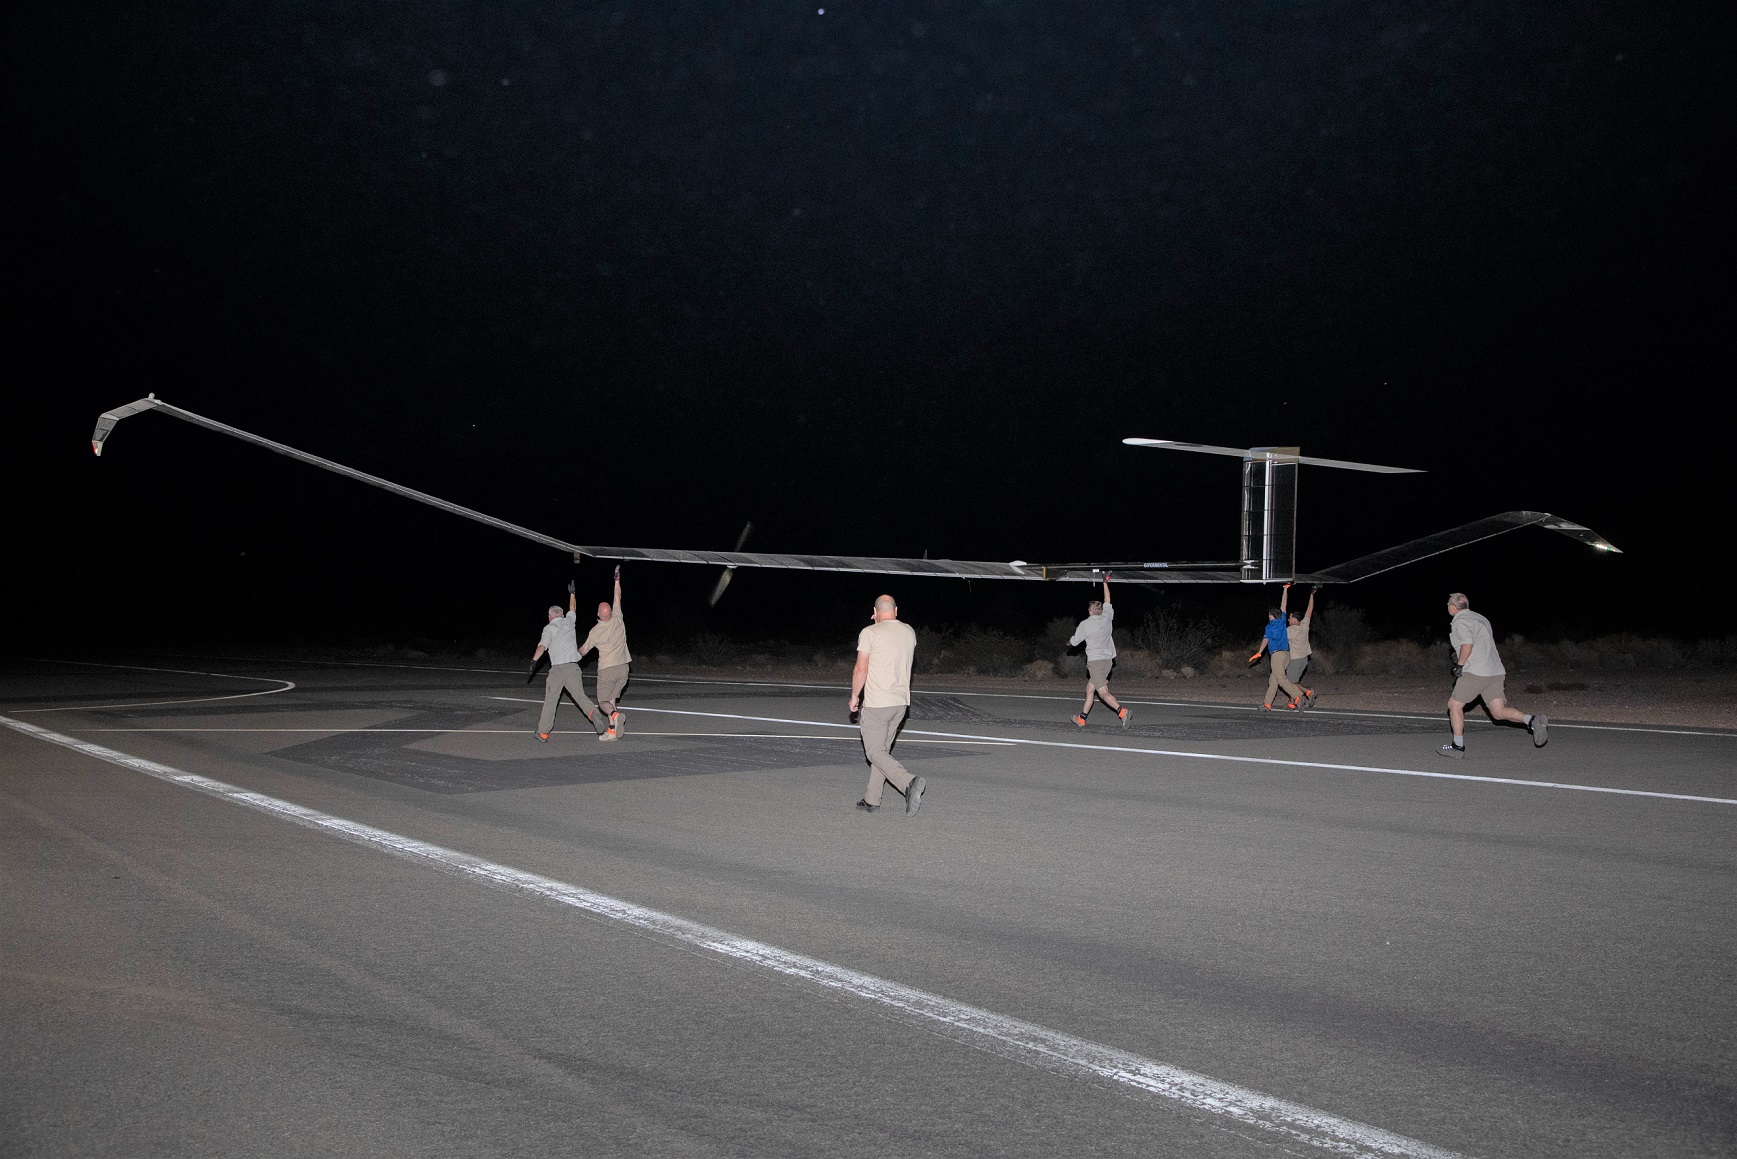 L'armée américaine teste un drone stratosphérique, qui survole la Terre pendant 36 jours